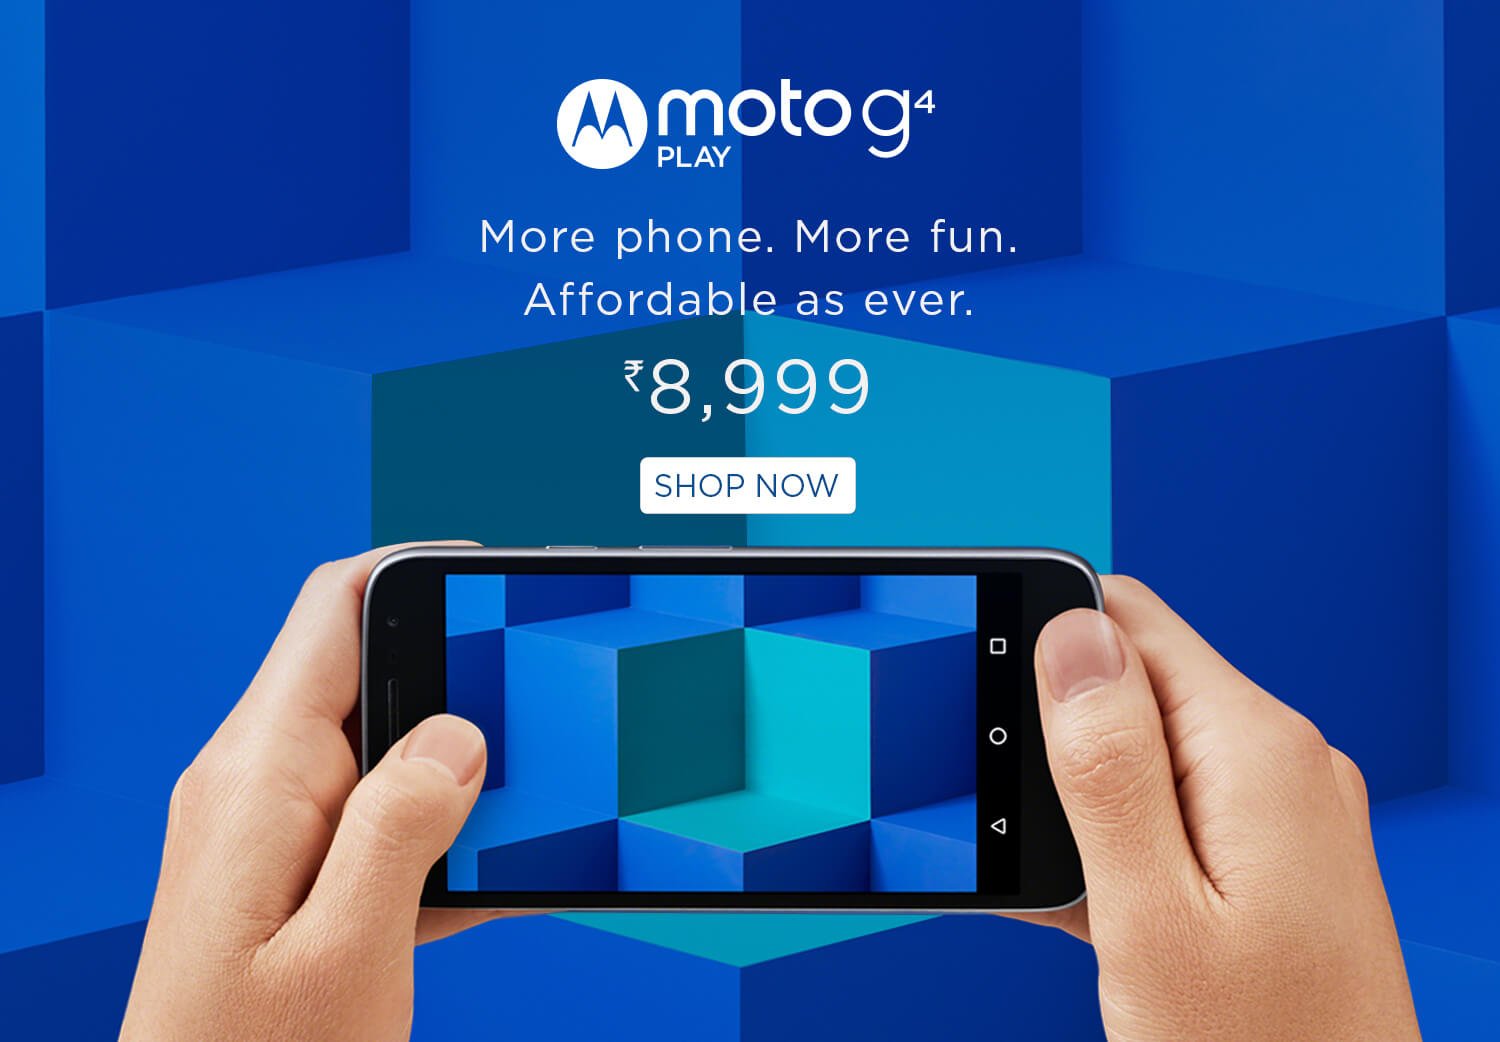 Moto G4 Play